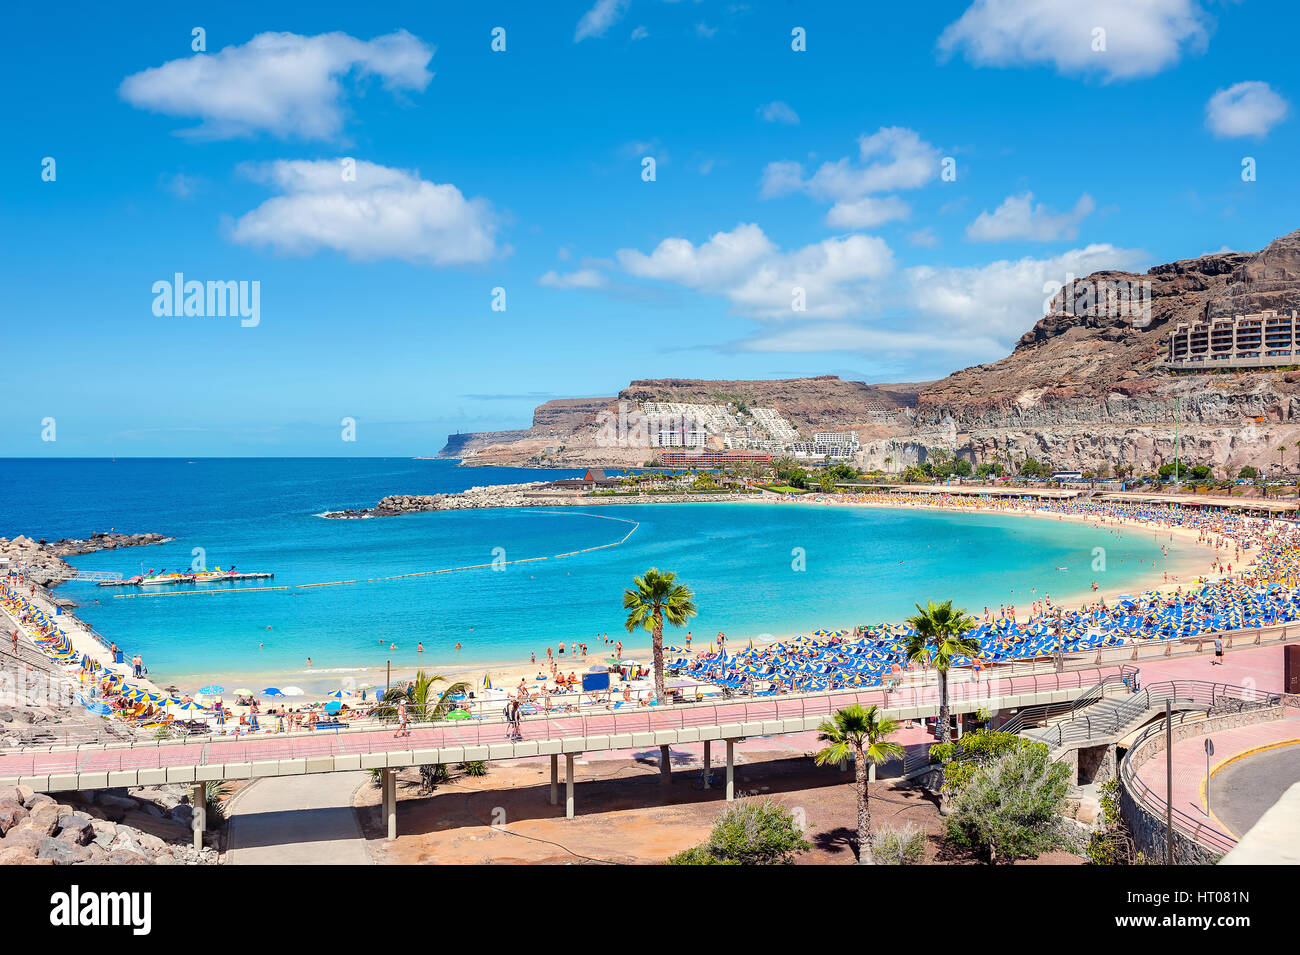 La famosa playa de Amadores. Gran Canaria, Islas Canarias, España Foto de stock